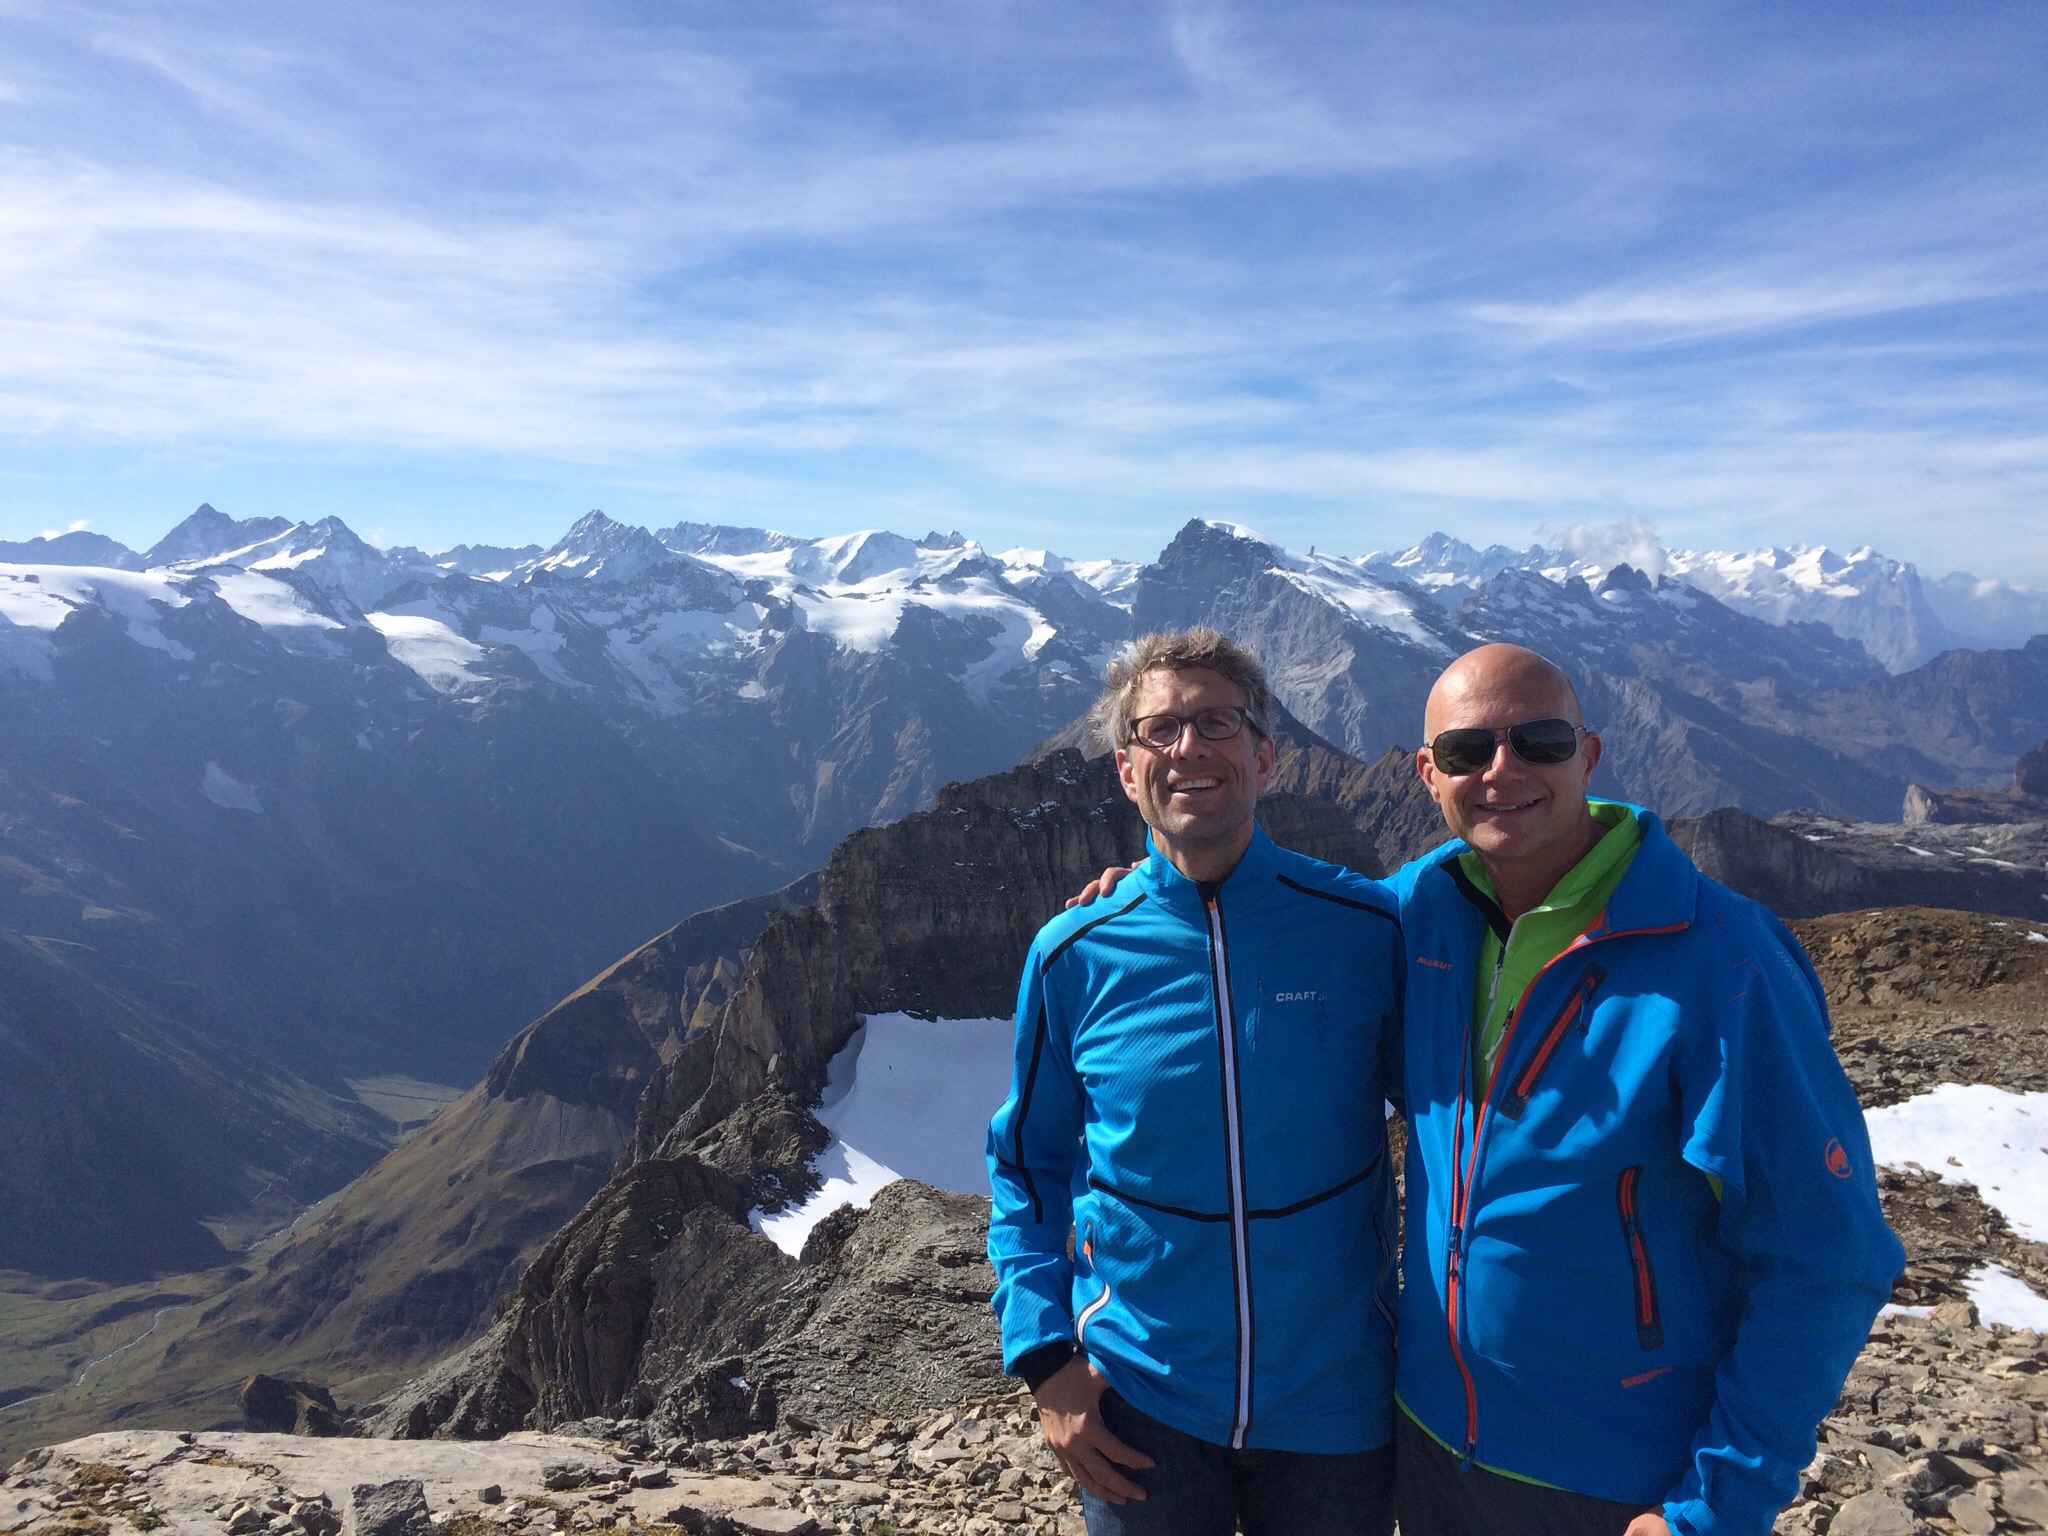 Gipfelfreude mit Sonne, Sustenhorn, Titlis und den Berner Viertausendern in der Ferne